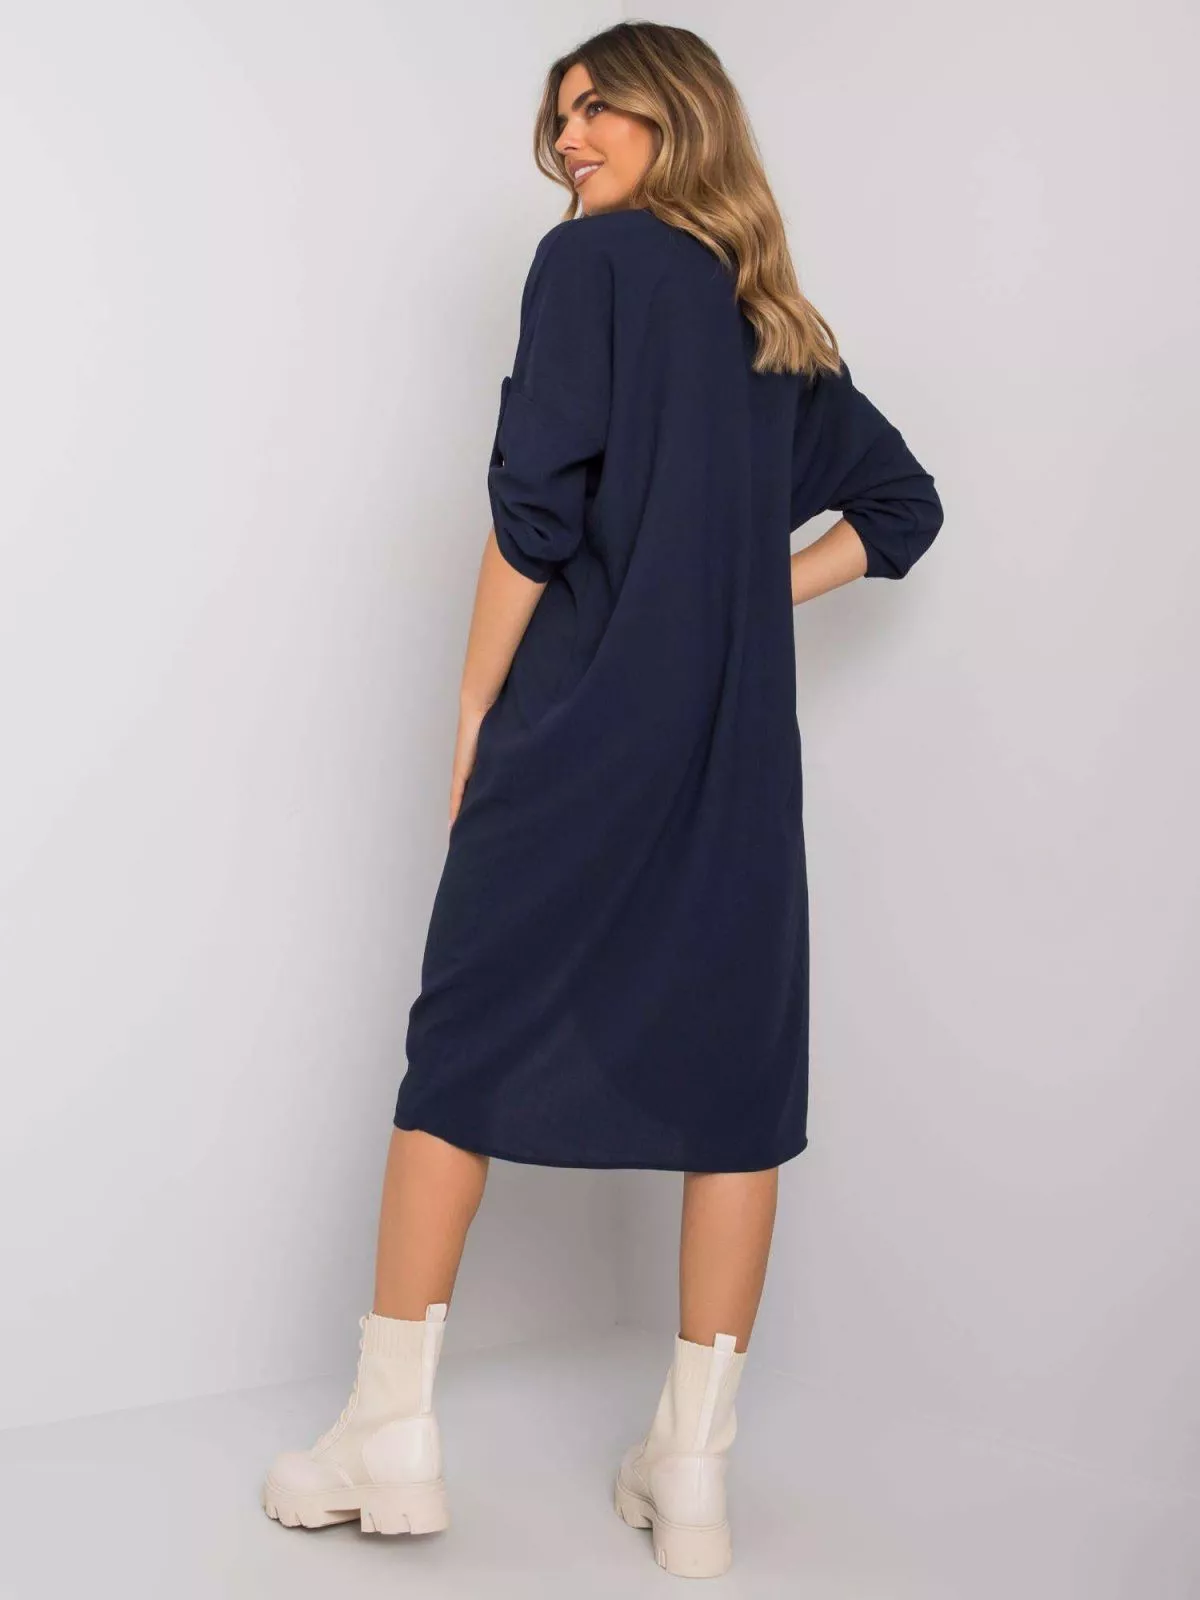 Rochie de zi casual bleumarin - rochii de zi